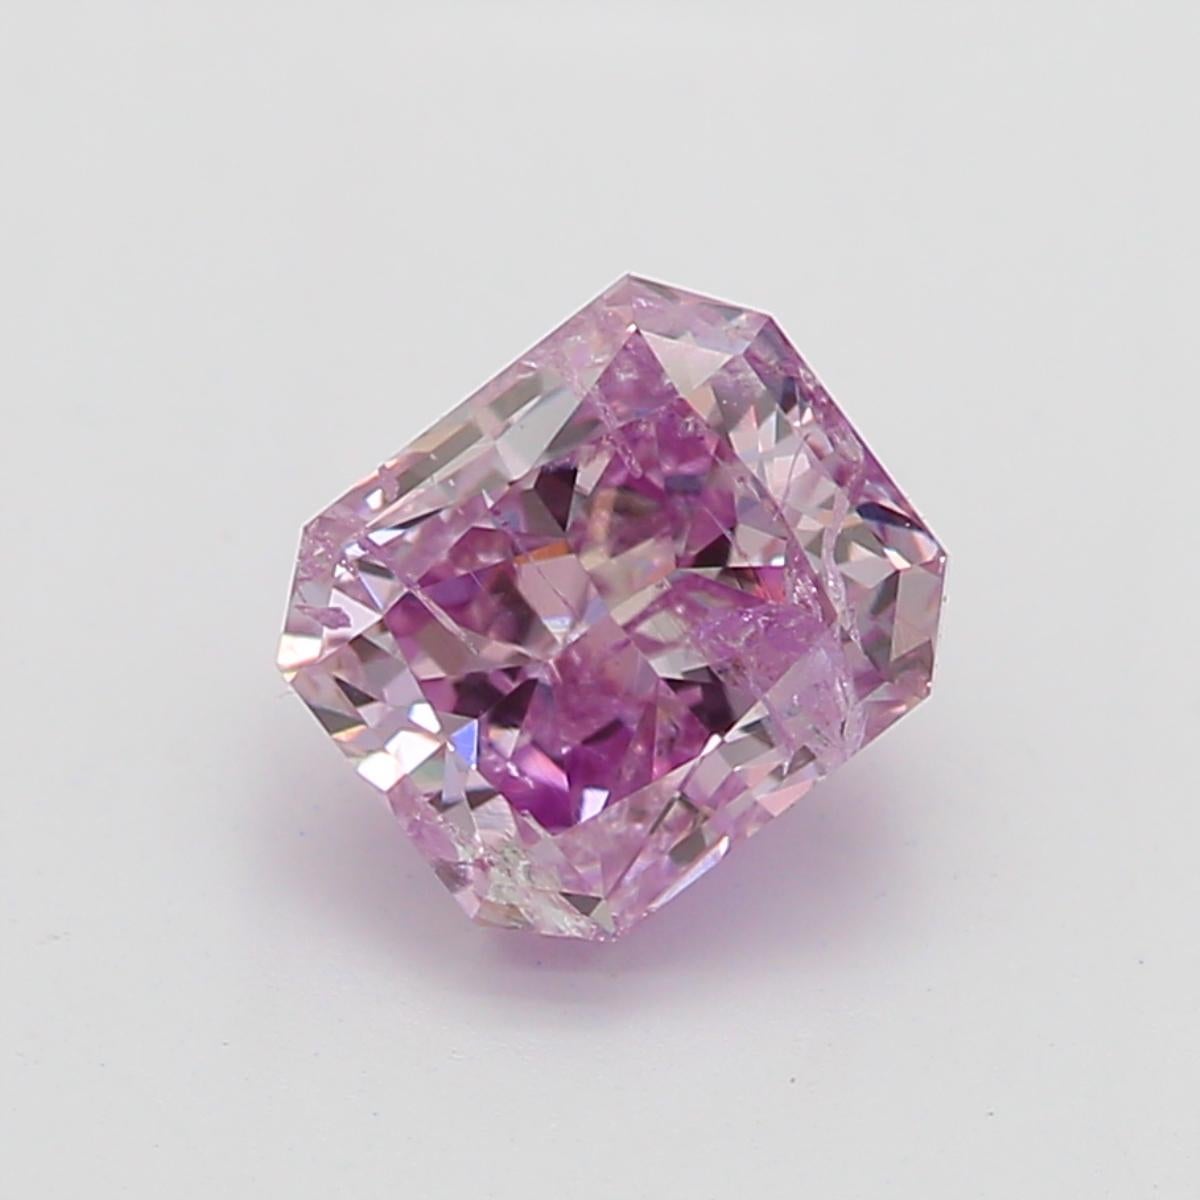 *100% NATÜRLICHE FANCY-DIAMANTEN*

Diamant Details

➛ Form: Strahlend
➛ Farbton: Fancy Lila Rosa
➛ Karat: 0,57
➛ Klarheit: I2
➛ GIA zertifiziert 

^MERKMALE DES DIAMANTEN^

Dieser Diamant im Radiant-Schliff ist ein rechteckiger oder quadratischer